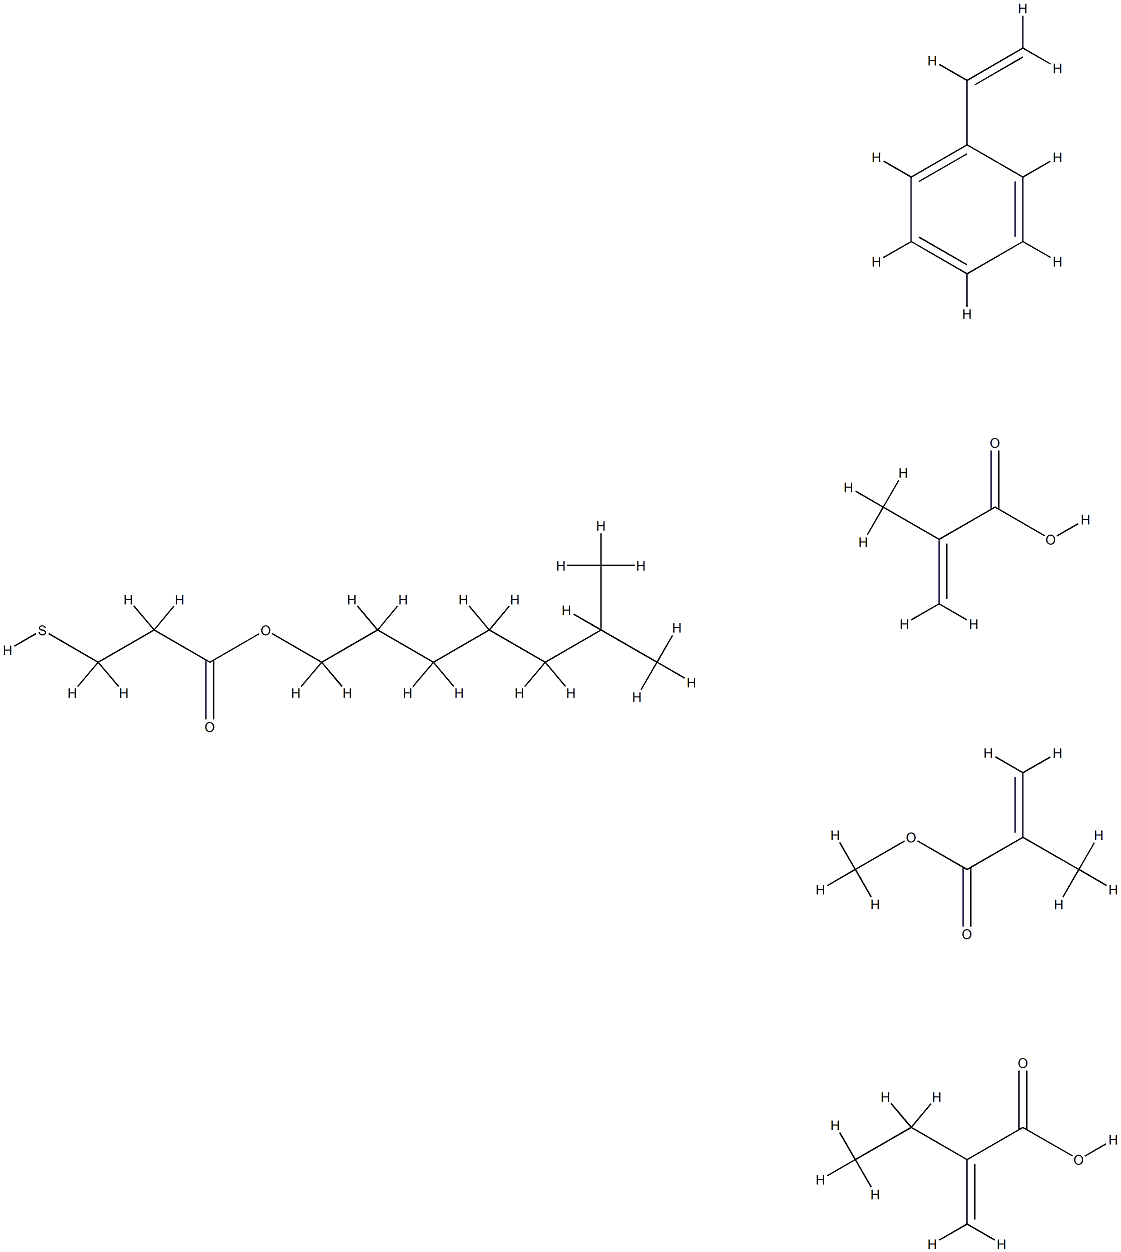 2-Propenoic acid, 2-methyl-, telomer with ethenylbenzene, ethyl 2-propenoate, isooctyl 3-mercaptopropanoate and methyl 2-methyl-2-propenoate Structure